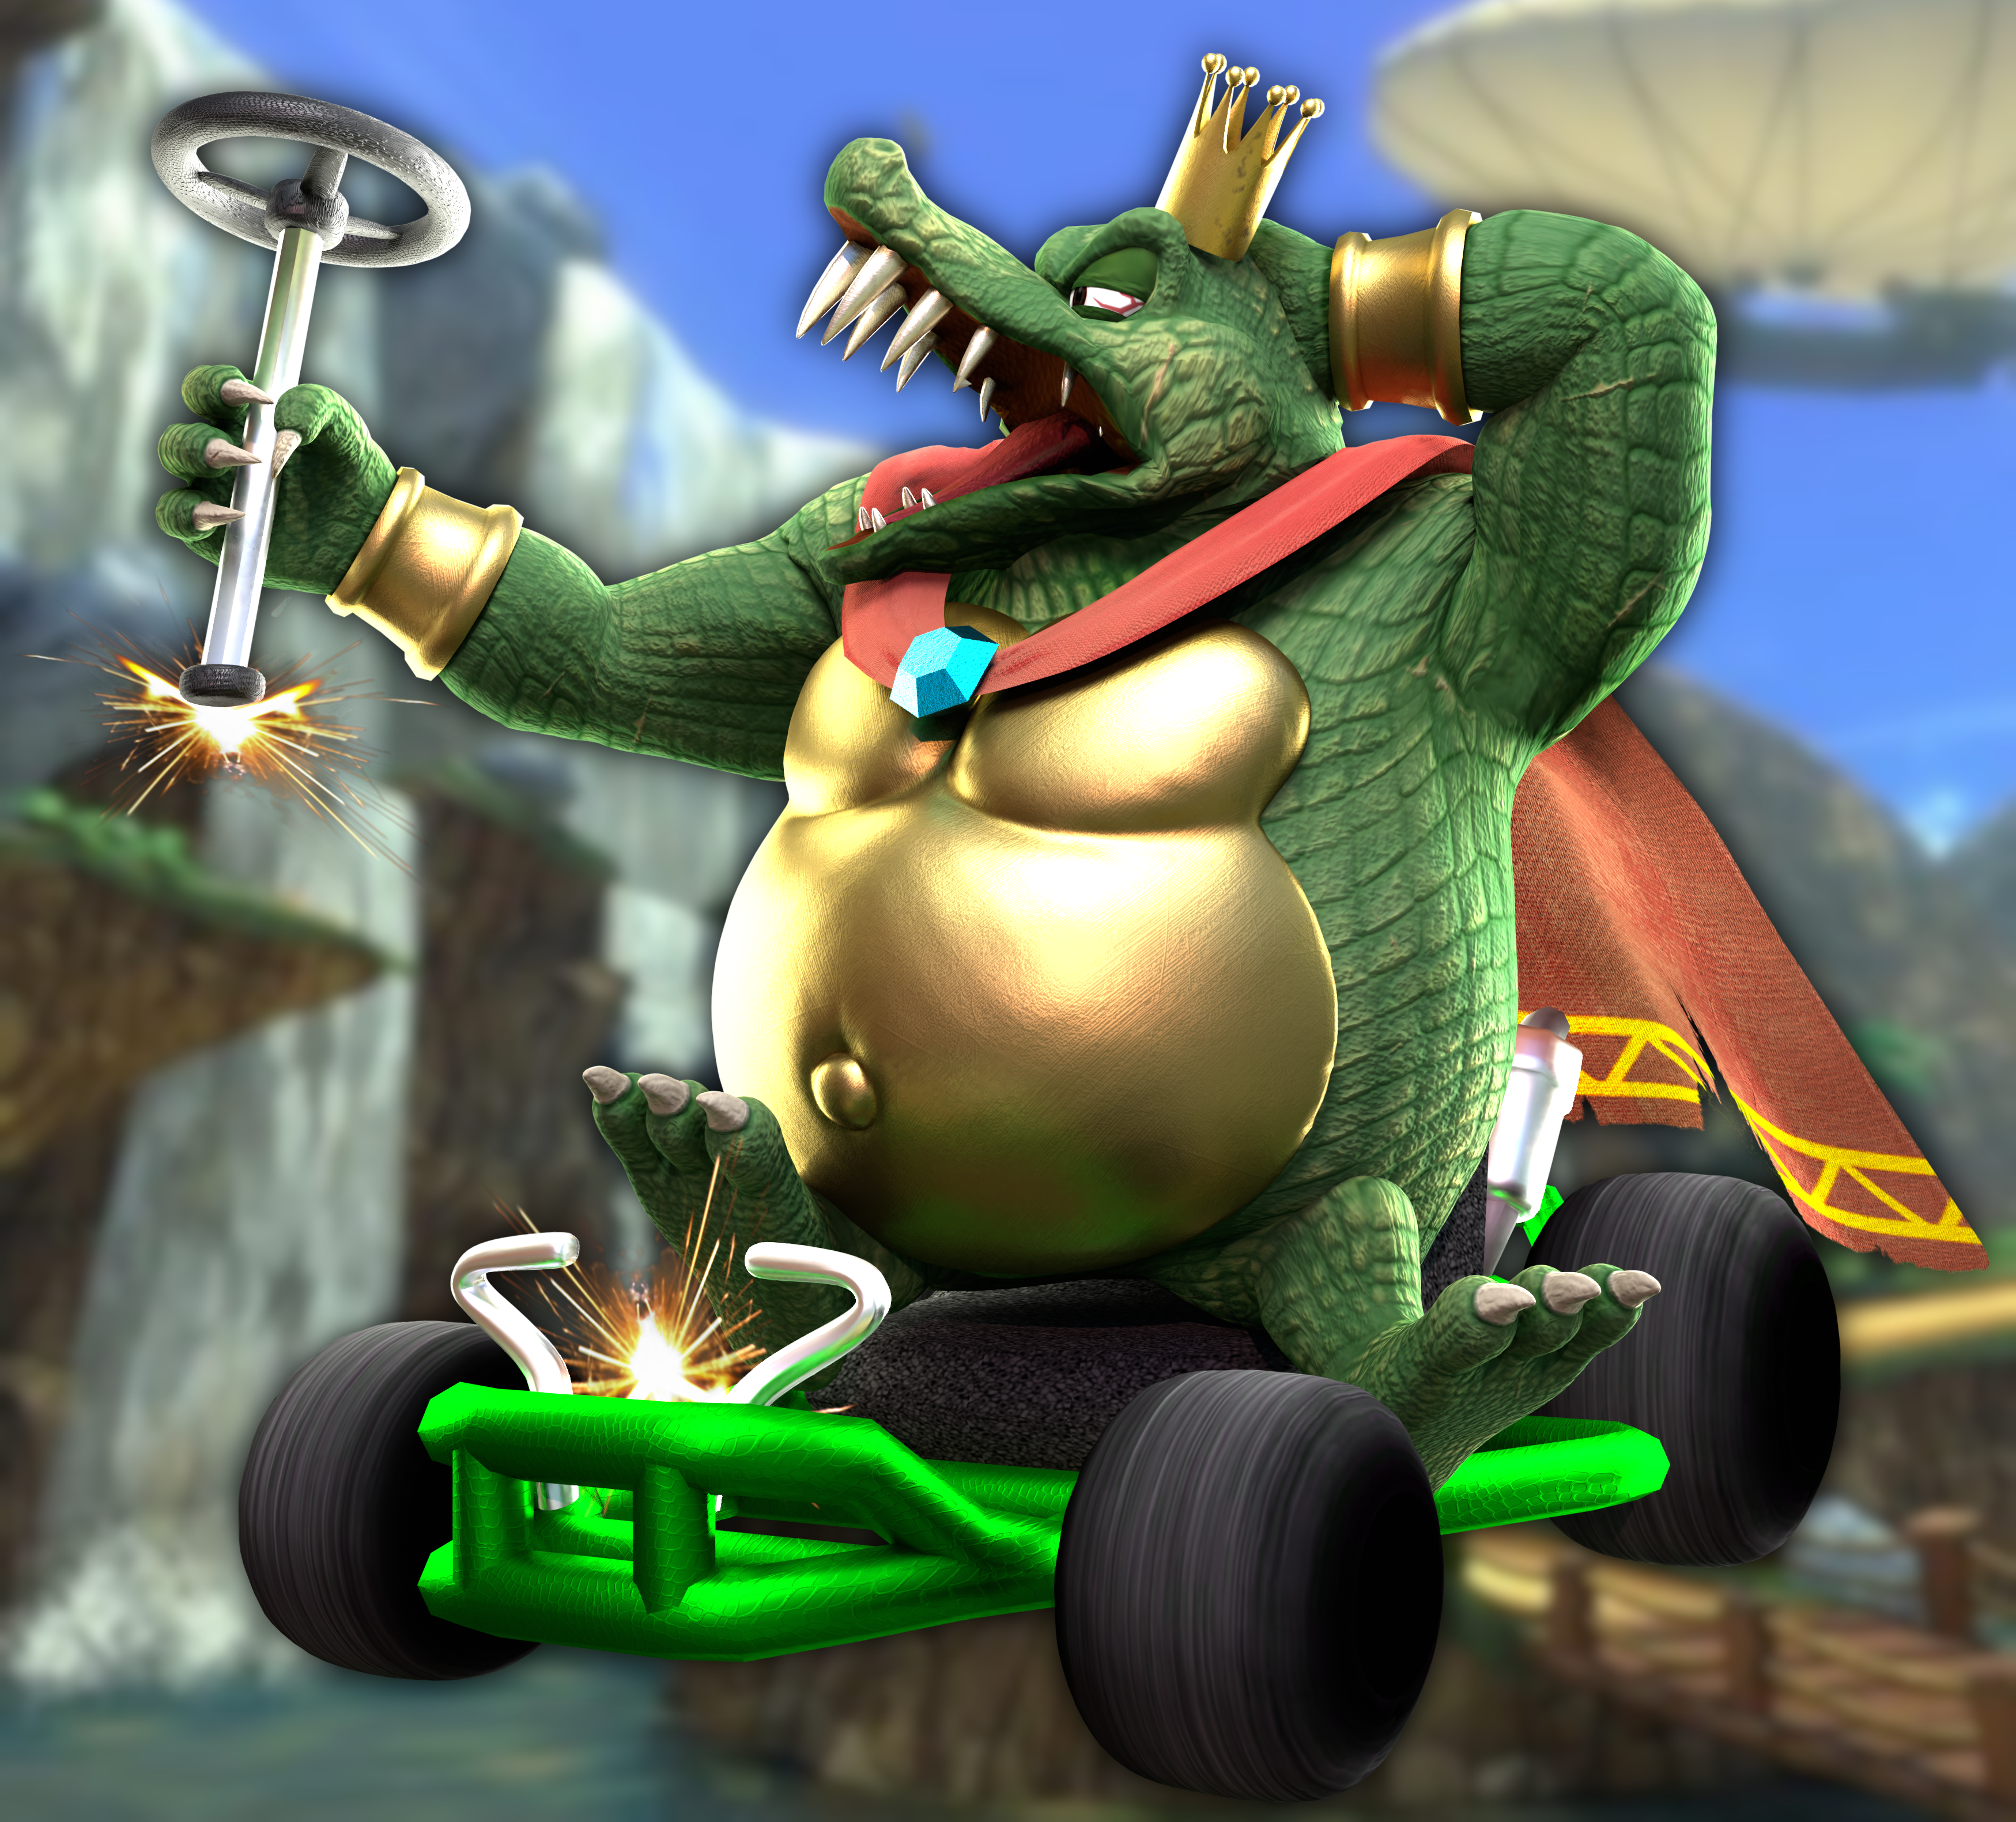 3D Render: Smash Kart by MegaMario2001 on DeviantArt